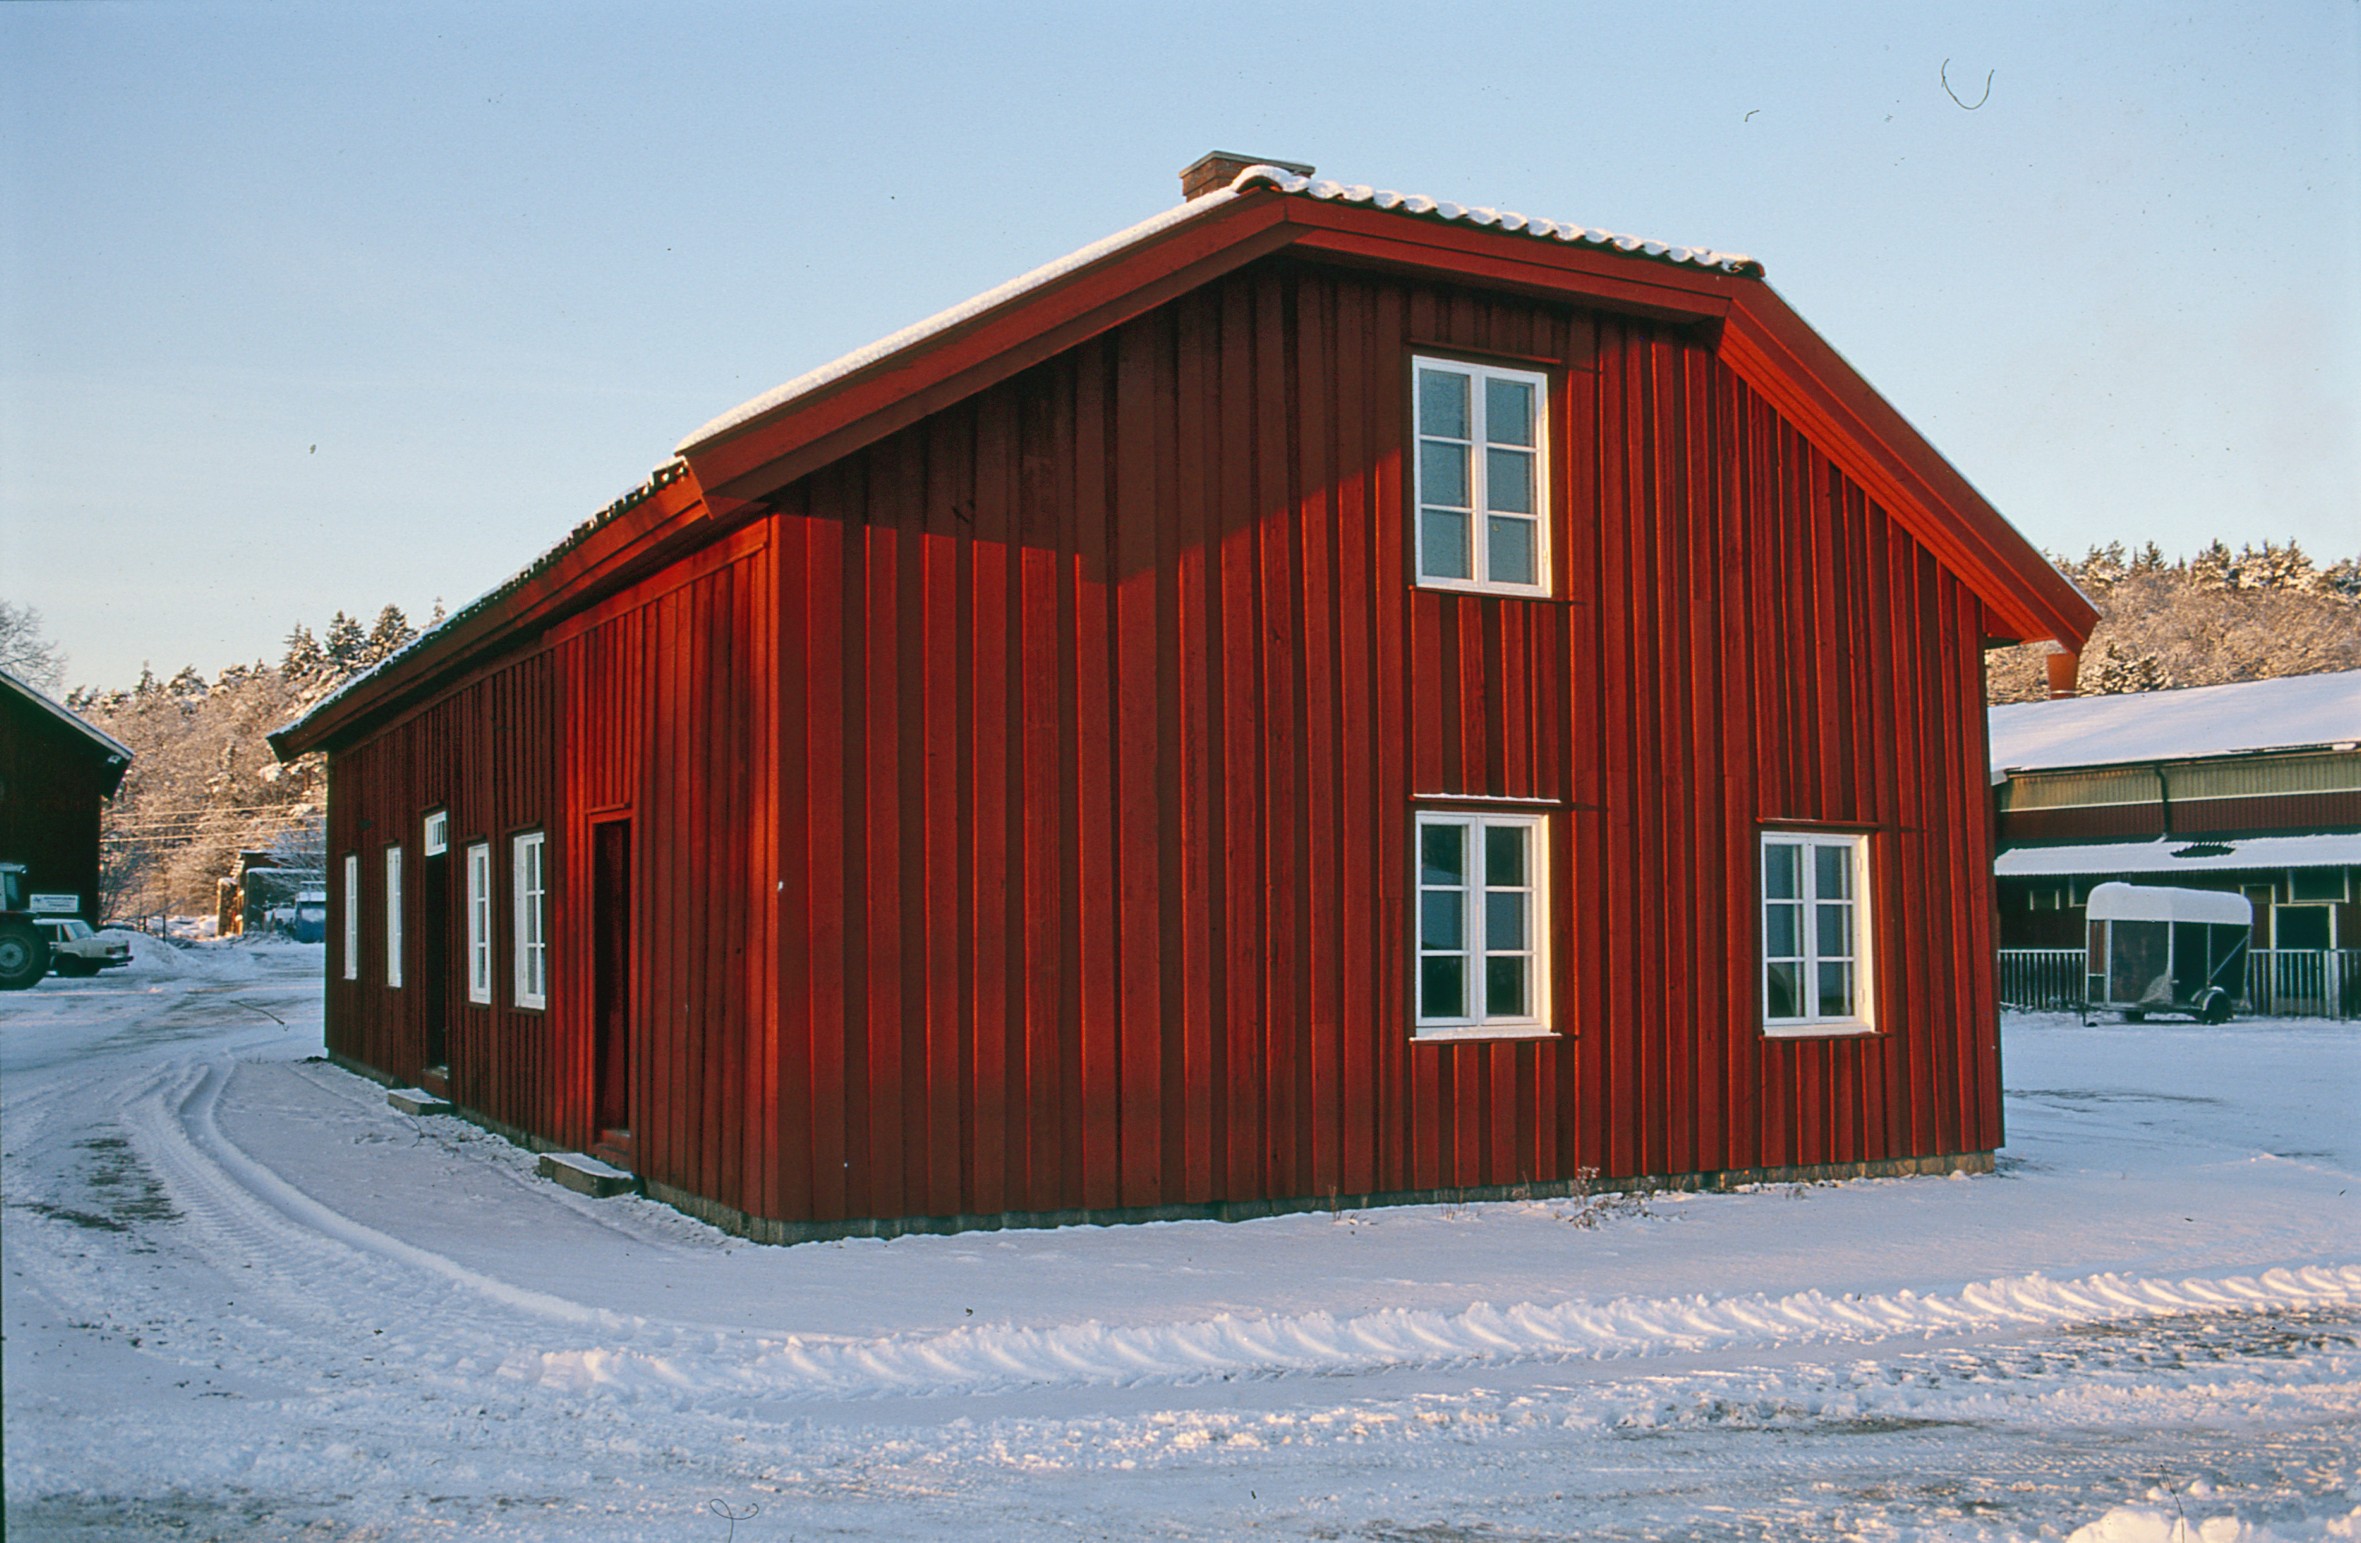 Färgfoto visar röd byggnad med vita fönster på en snötäckt gårdspan.